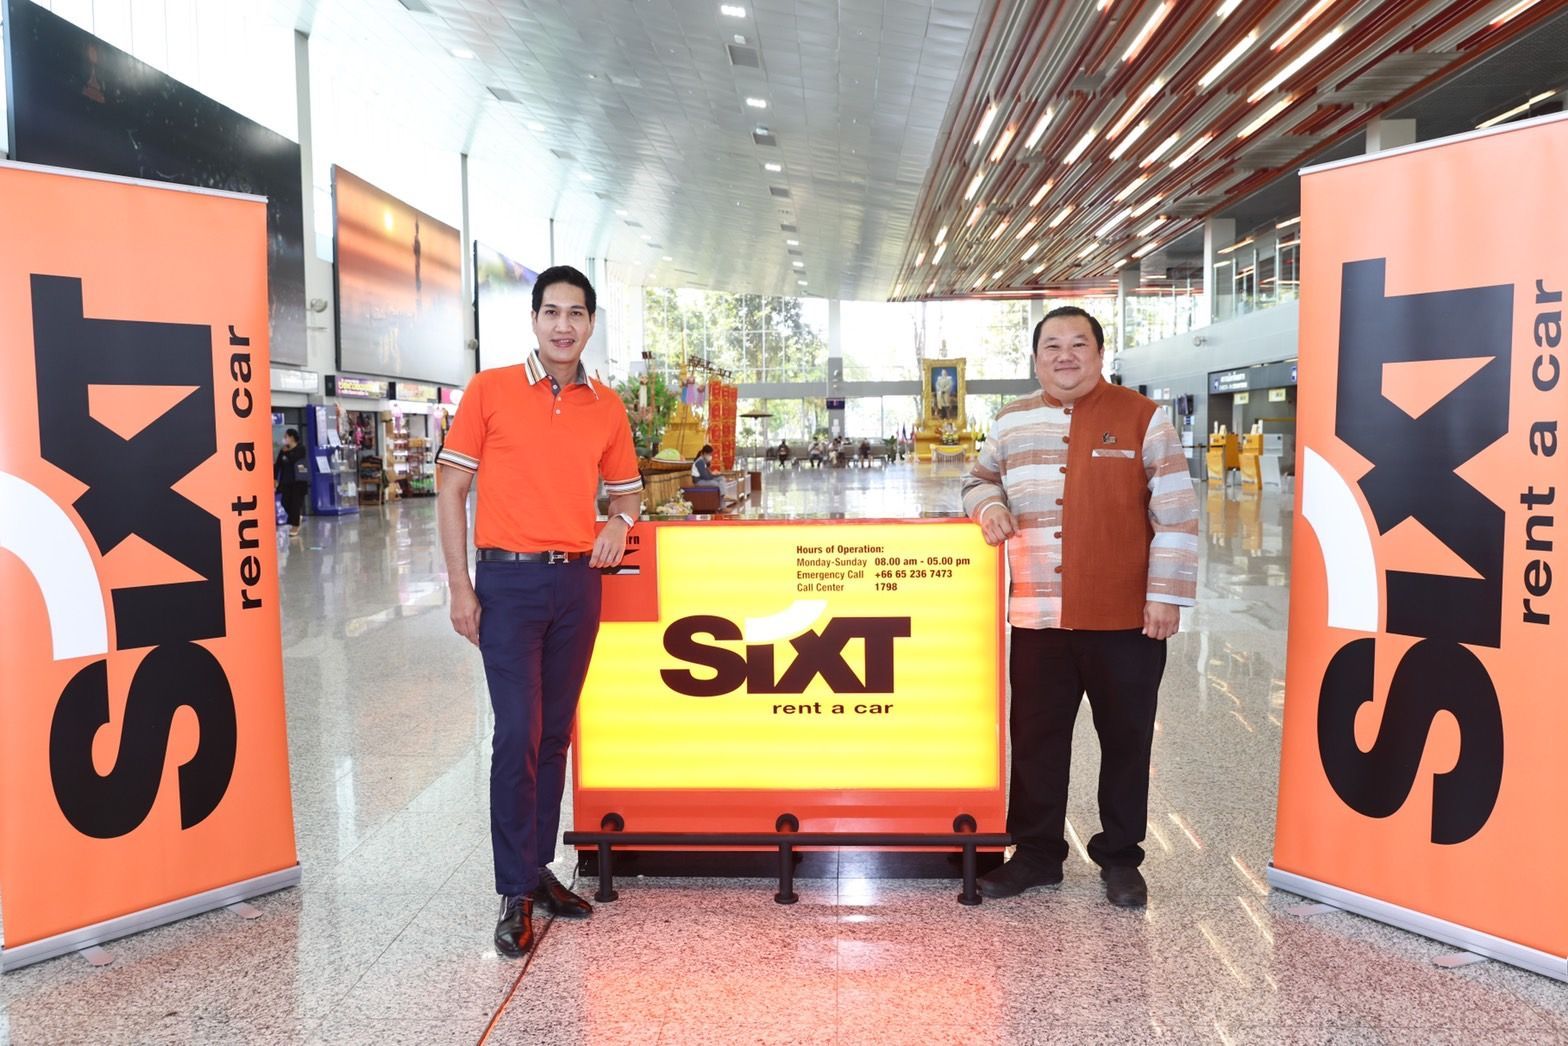 ซิกท์ รถเช่า ประเทศไทย ปักหมุดสาขาใหม่ สนามบินน่านนคร พร้อมปันน้ำใจให้เด็กๆ ผ่าน ‘SIXT Drying Little Tears @NAN’